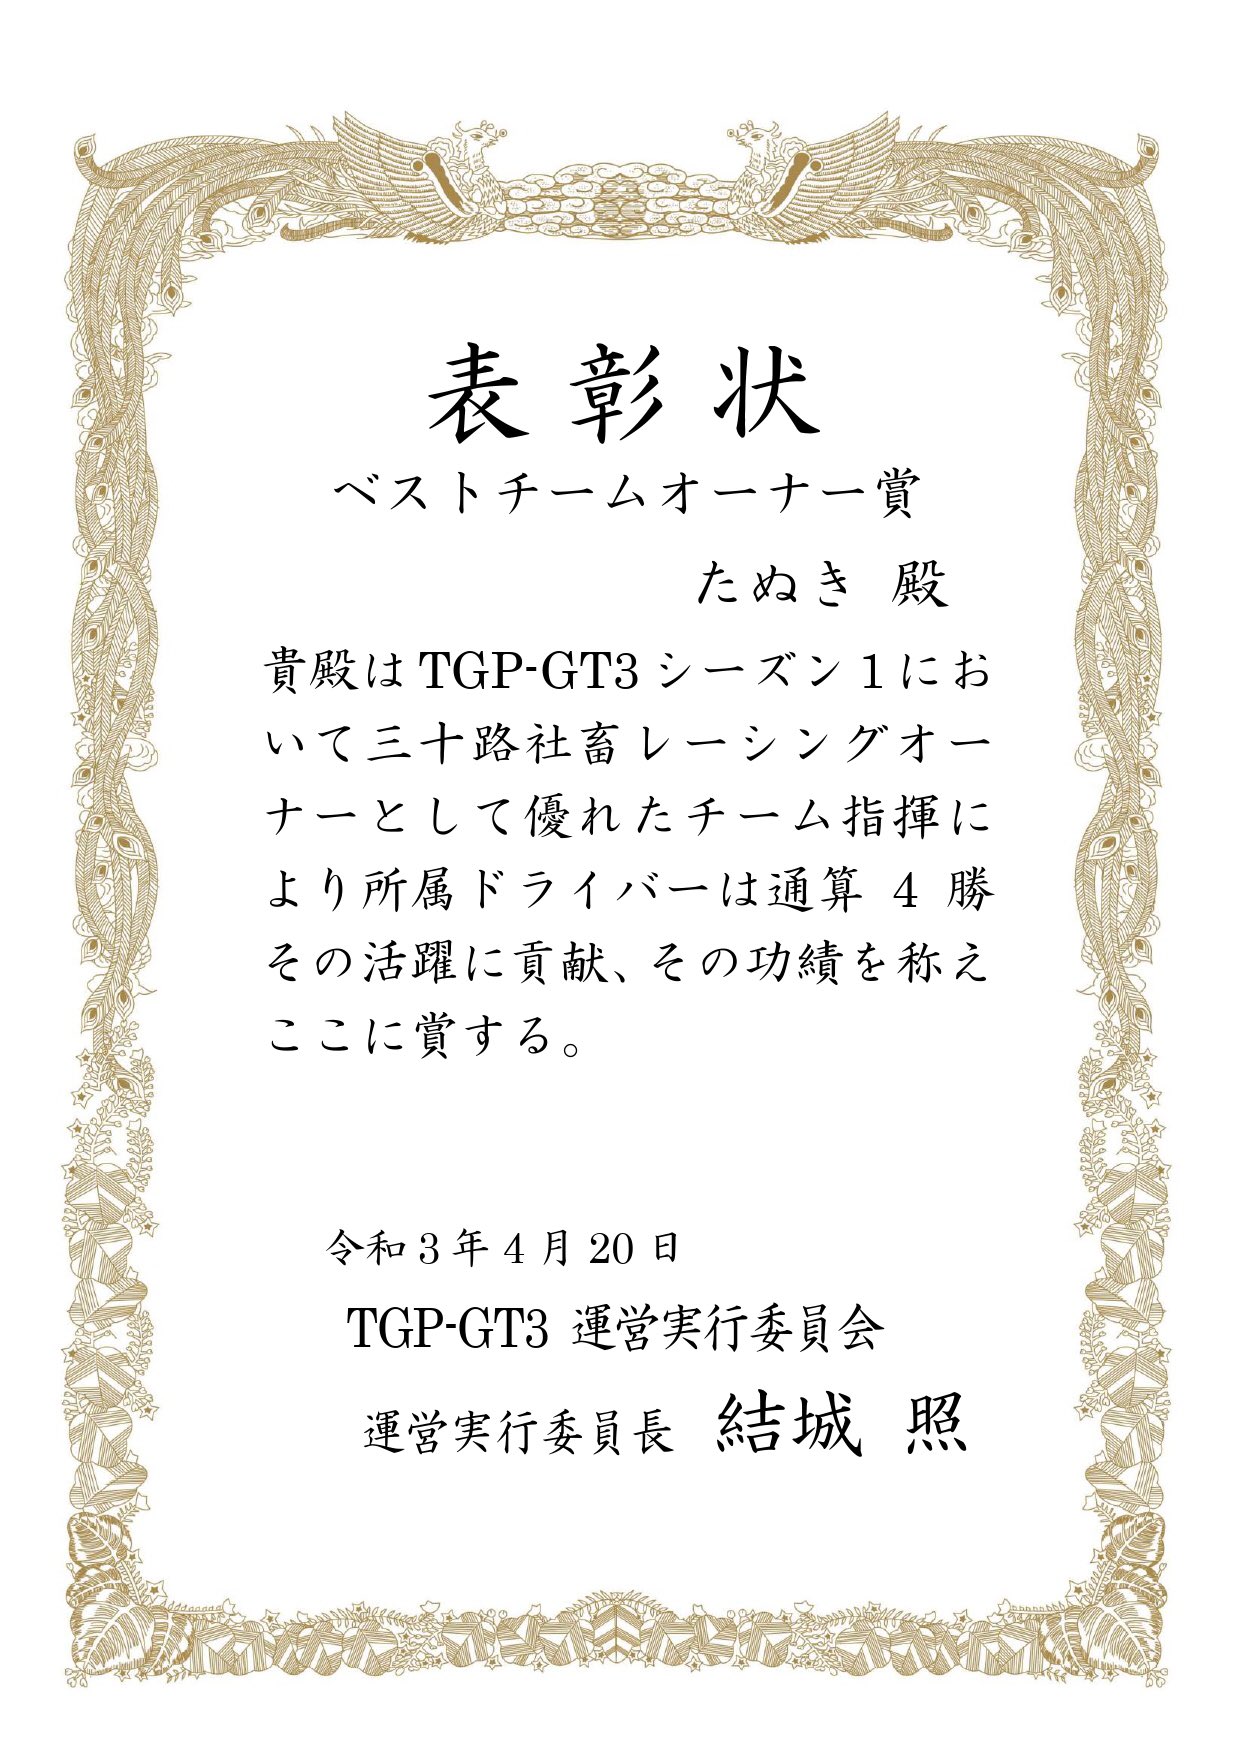 Tgp Gt3 Official 運営アカウント シーズン1 ベストチームオーナー賞は 三十路社畜レーシングオーナー たぬき様 Yb Tanuki に贈られます おめでとうございます Tgp Gt3 T Co Zpe5qbl5ee Twitter